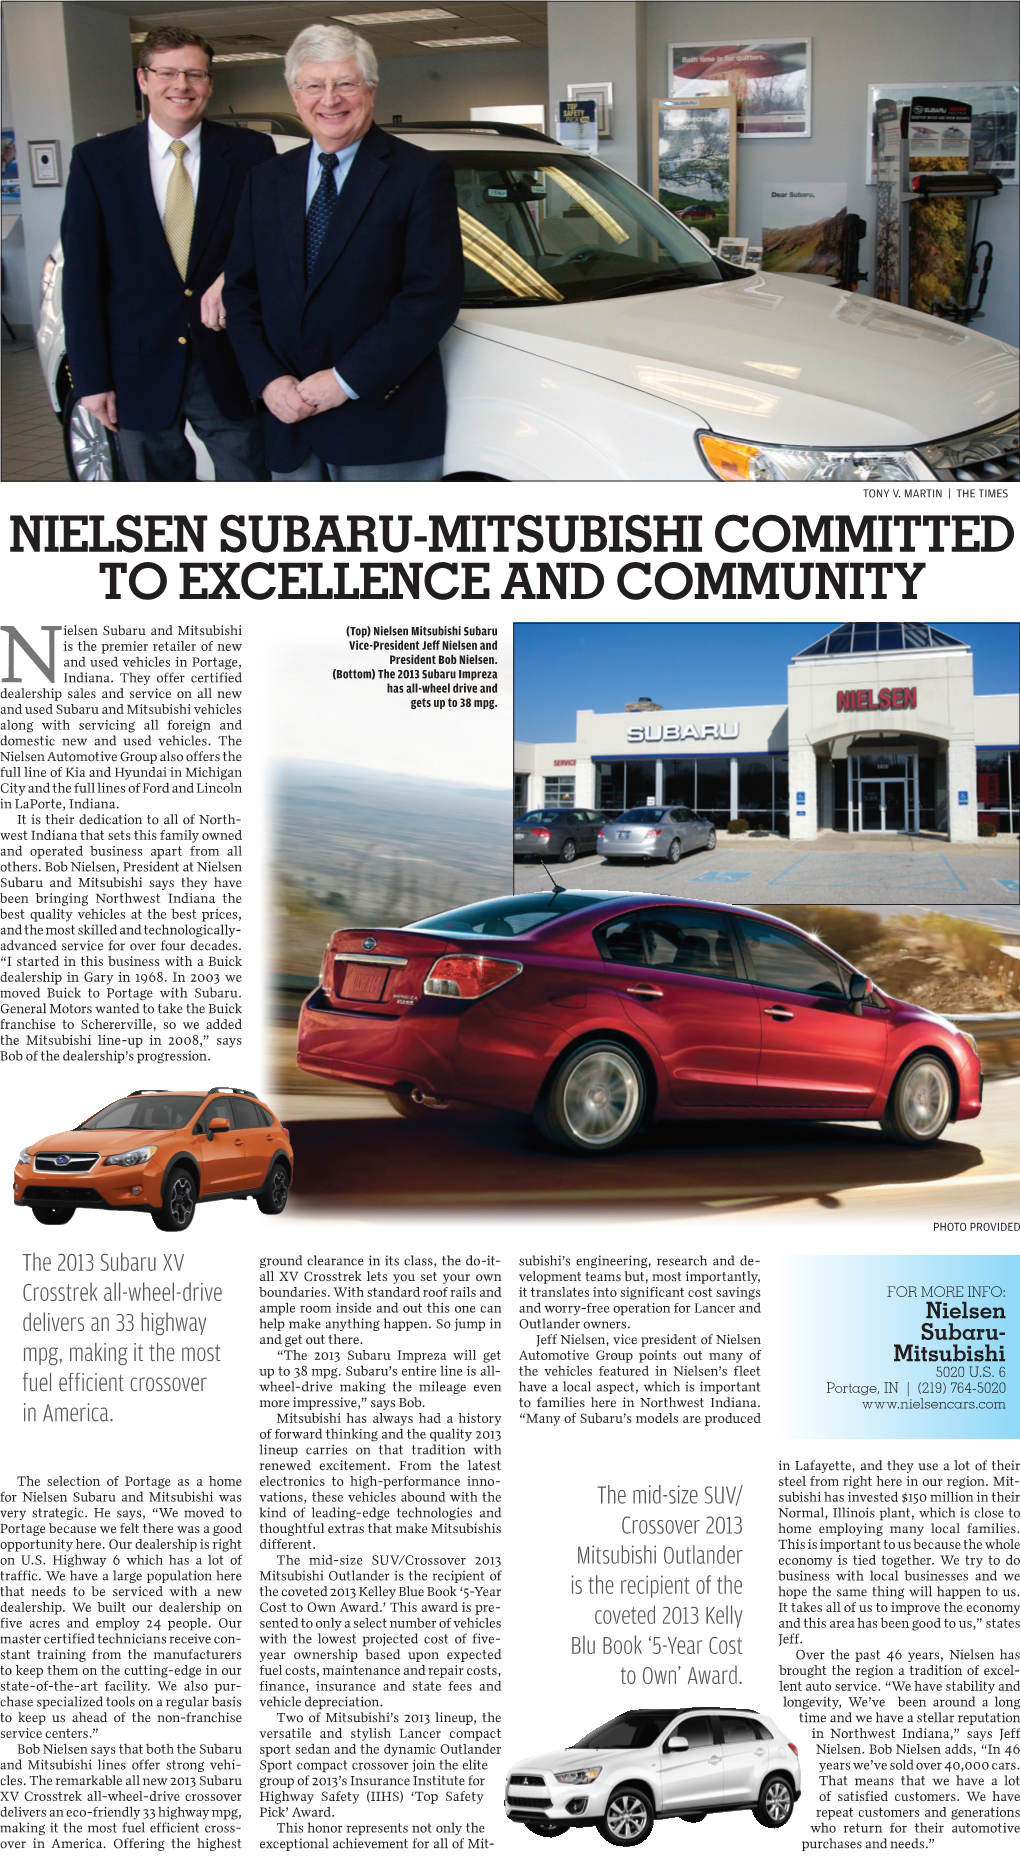 Nielsen Subaru- Mitsubishi